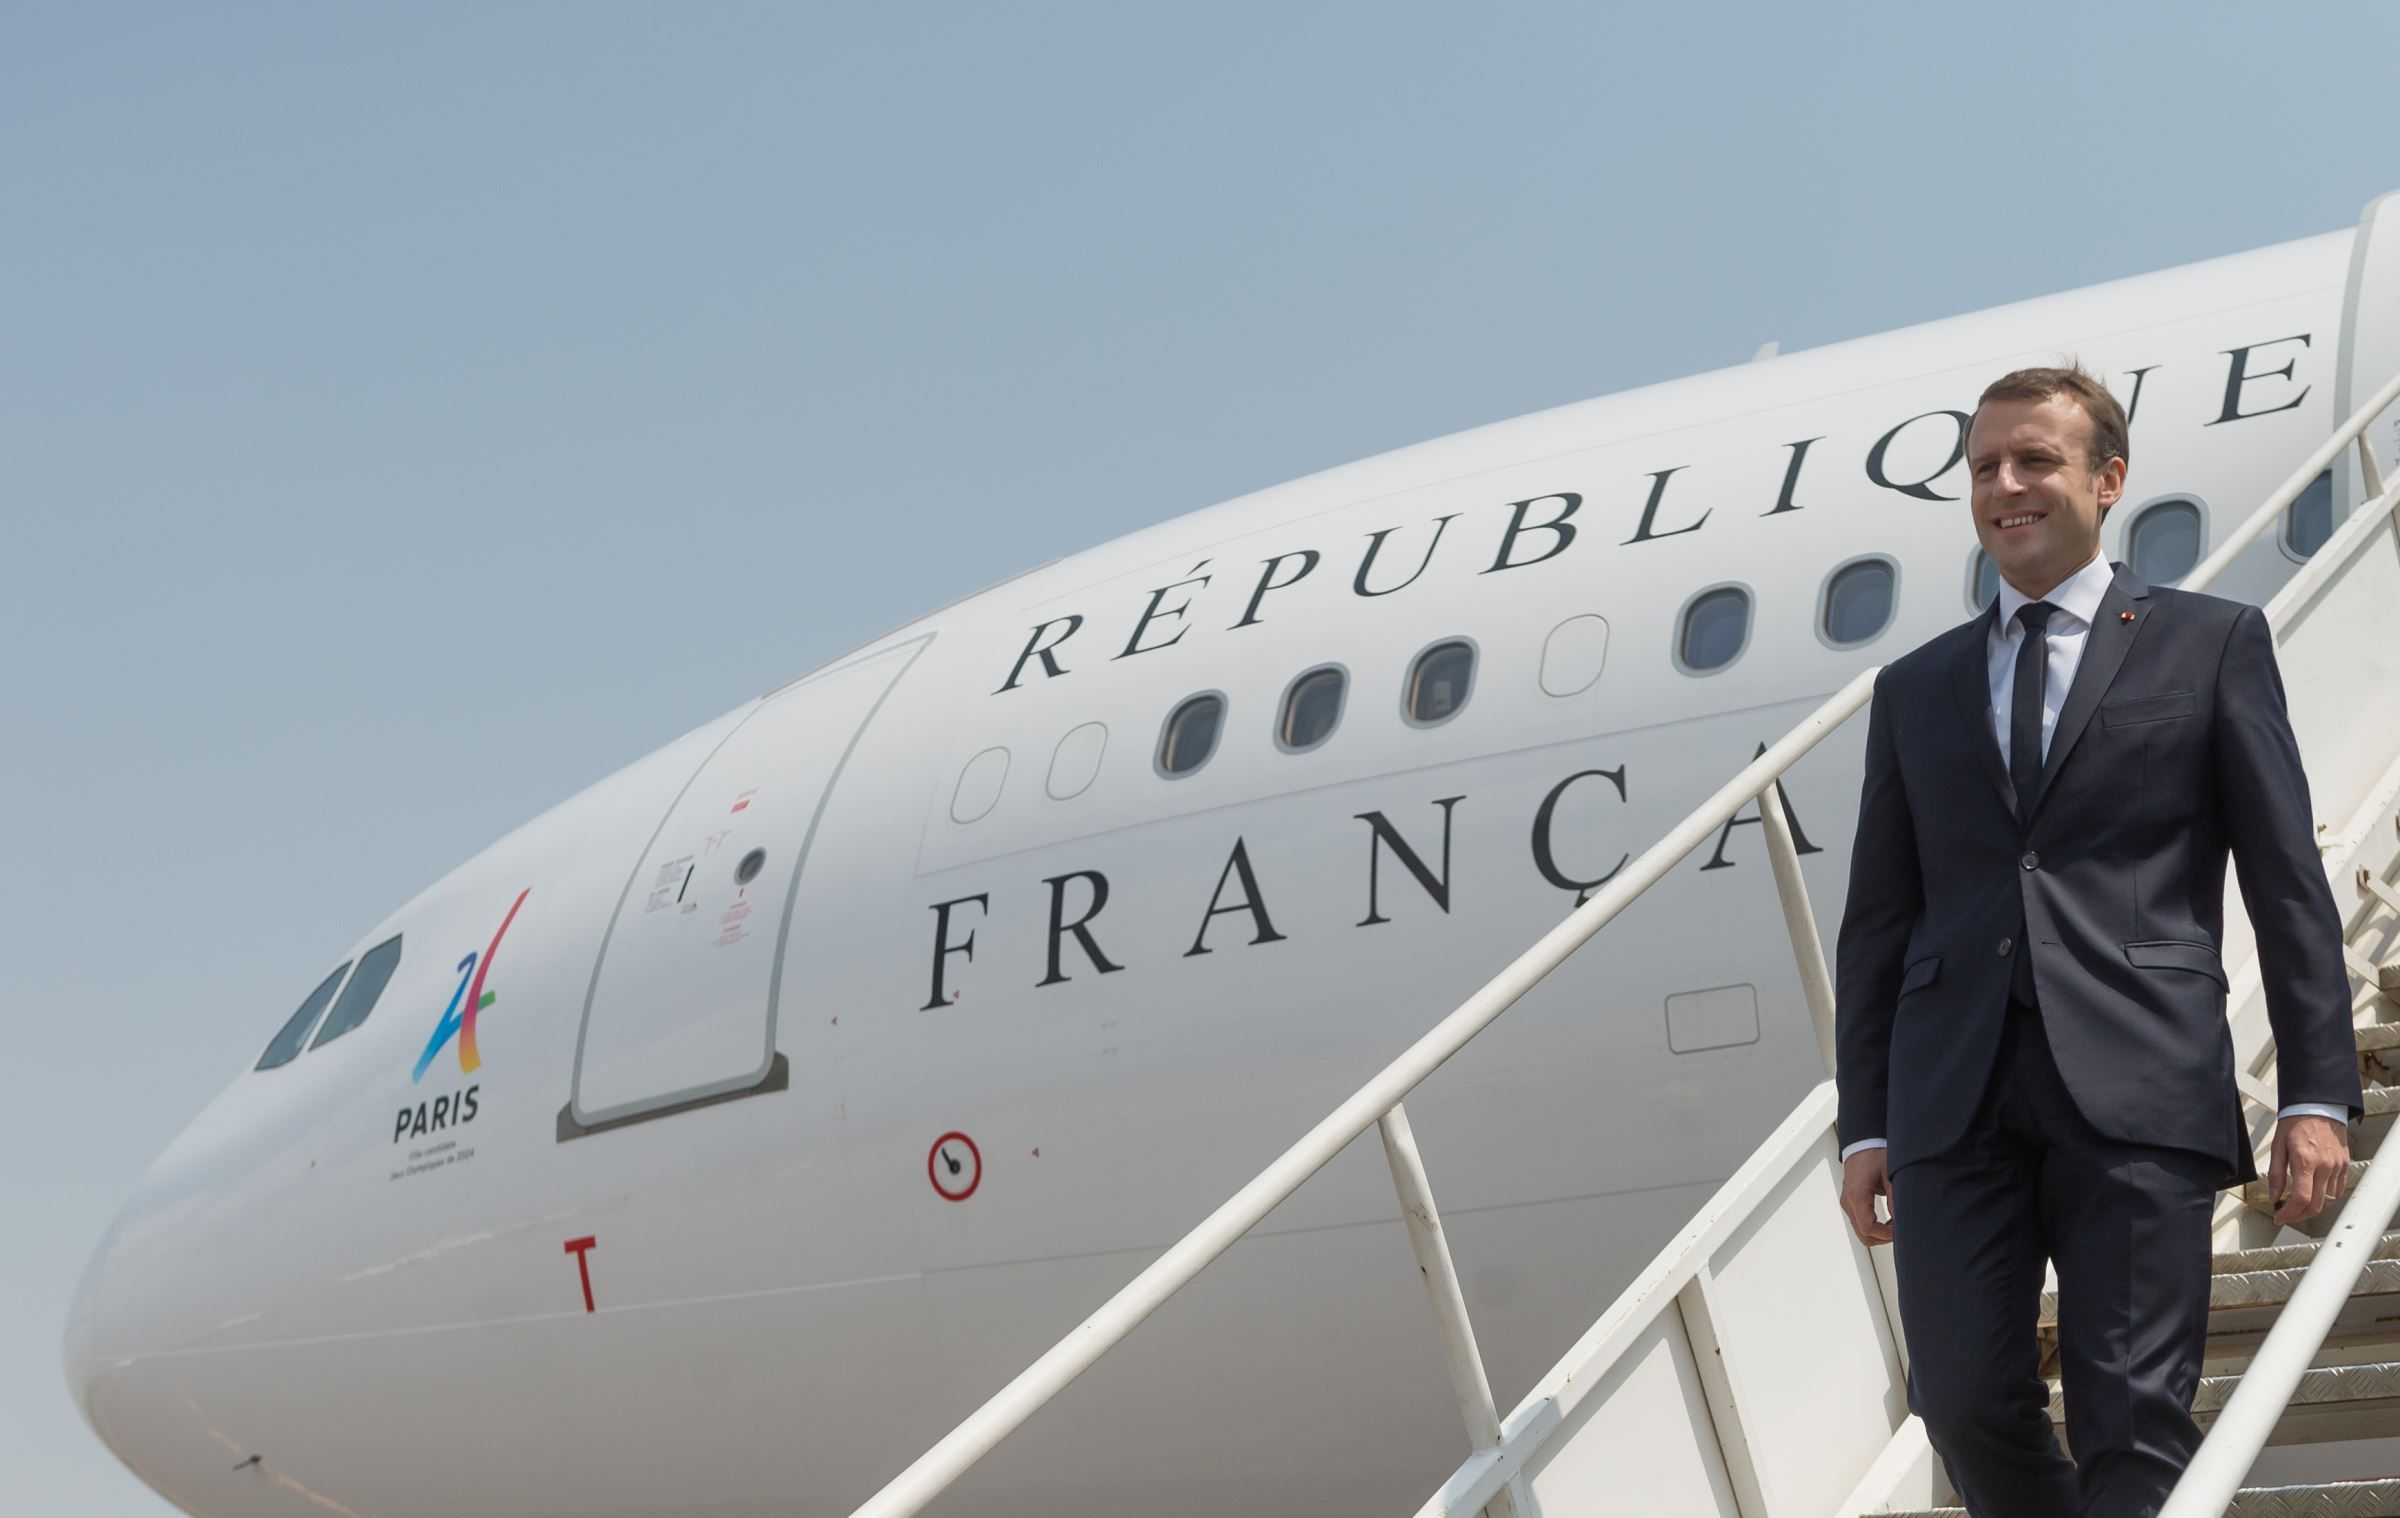 Paris 2024, visite d’un atoll, contrat de transformation : La visite d’Emmanuel Macron en Polynésie se dévoile petit à petit